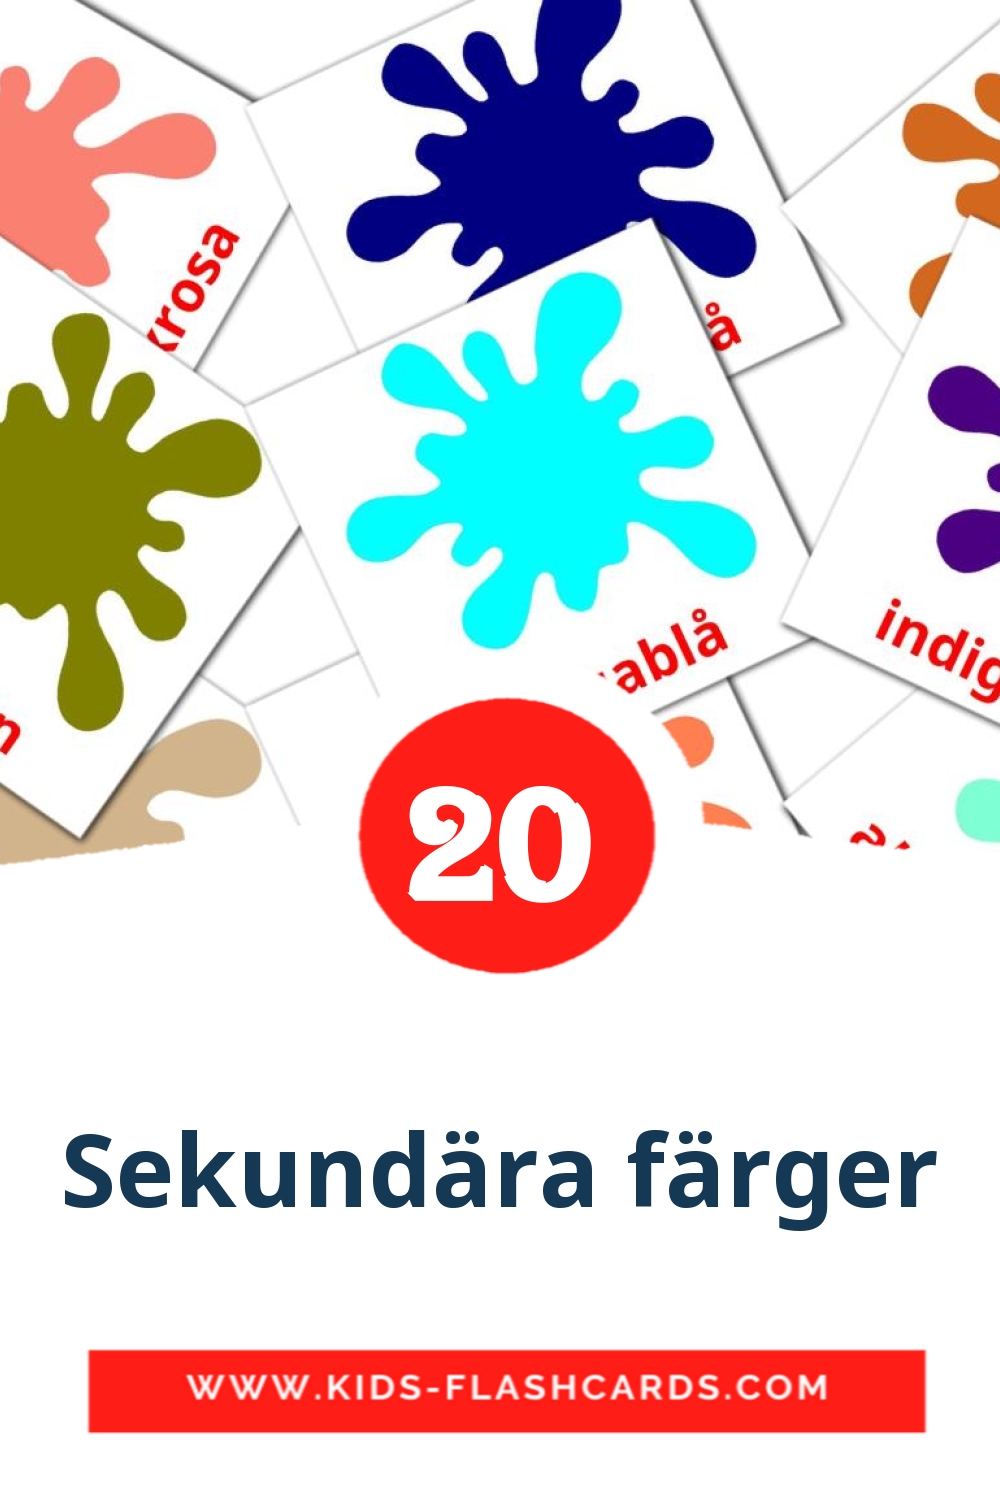 20 Cartões com Imagens de Sekundära färger para Jardim de Infância em sueco